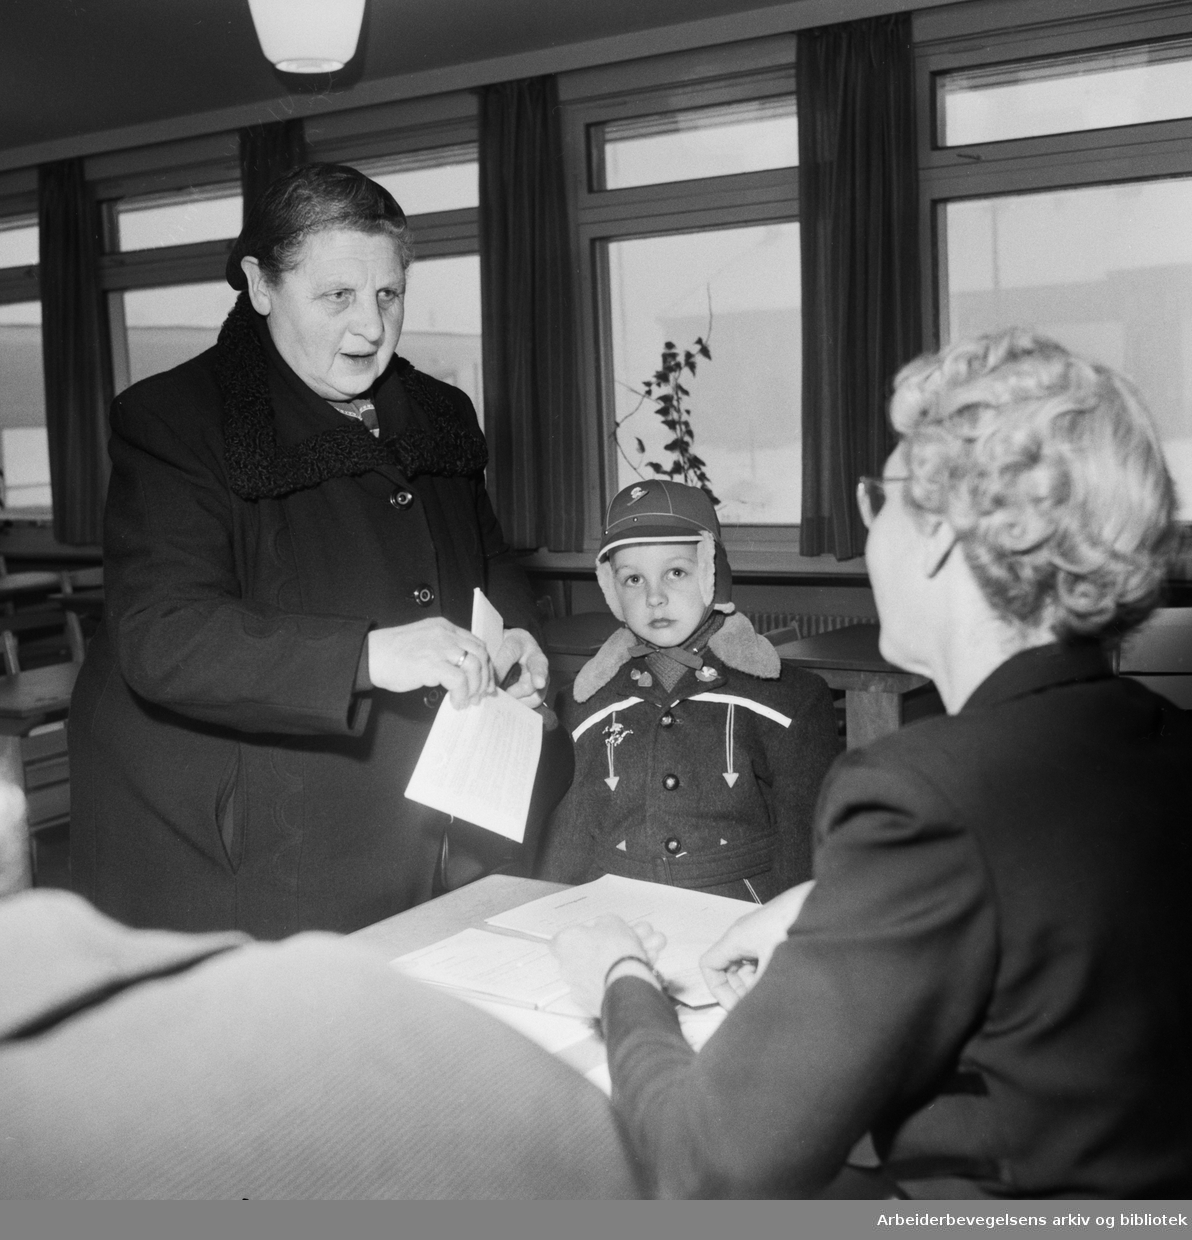 Seks år gamle Jan Erik Amundsen fra Lille Tøyen innskrives til Hasle skole. Januar 1958